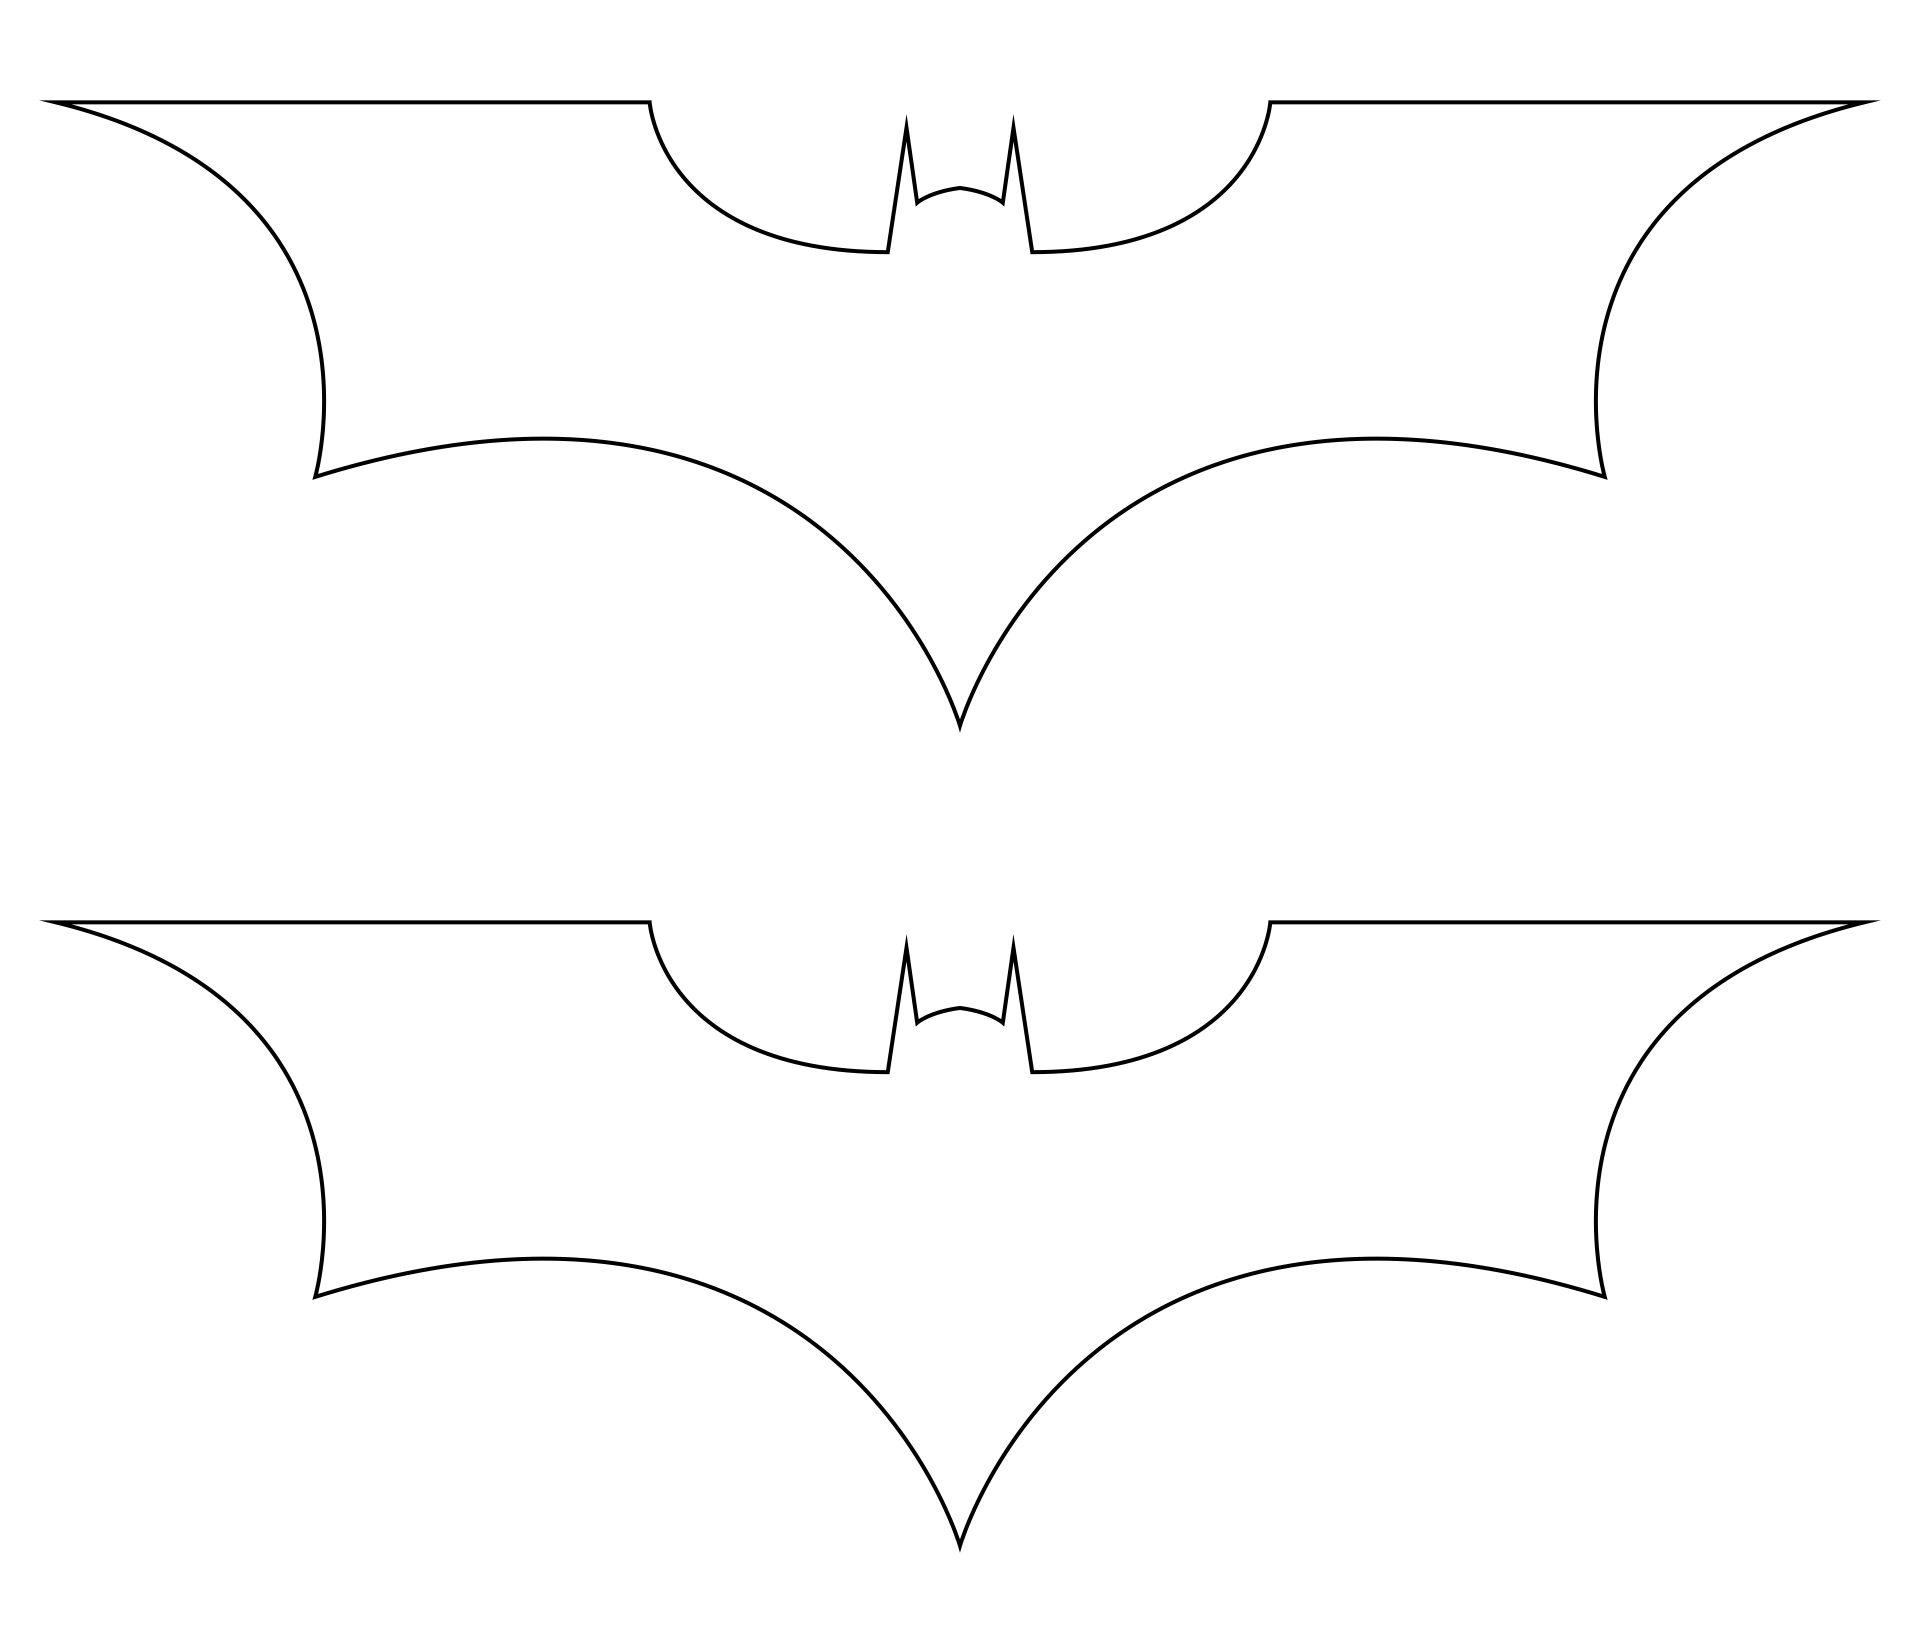 Bat Outline Printable - Printable World Holiday